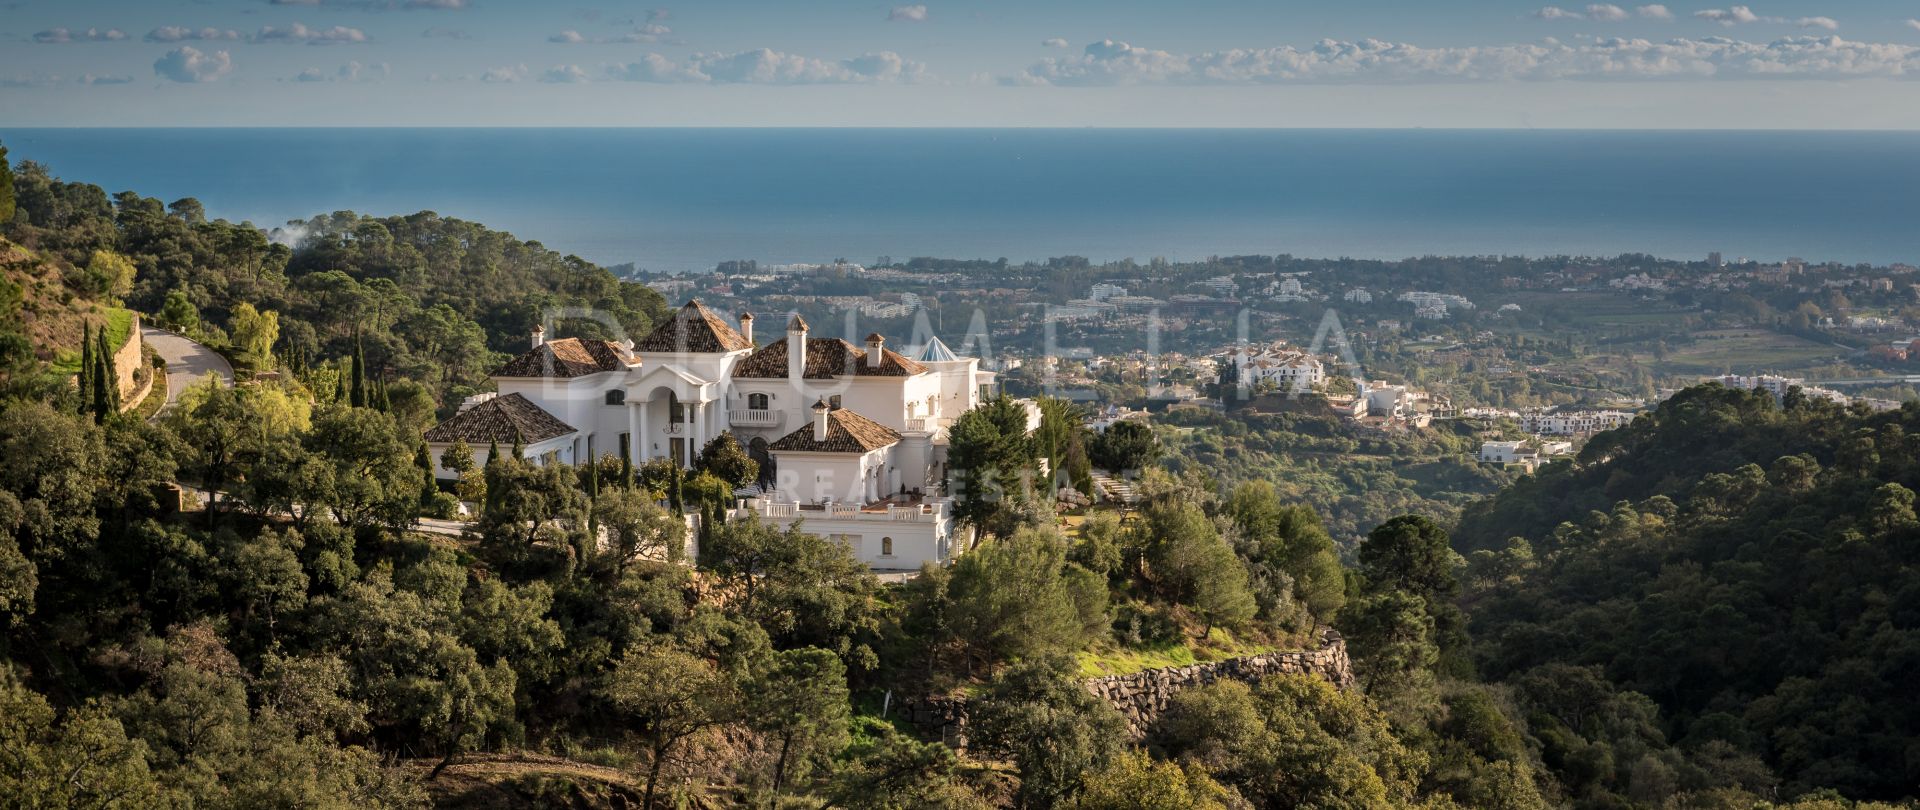 Buitengewoon luxe herenhuis in Beverly Hills-stijl met panoramisch uitzicht op zee in La Zagaleta, Benahavis